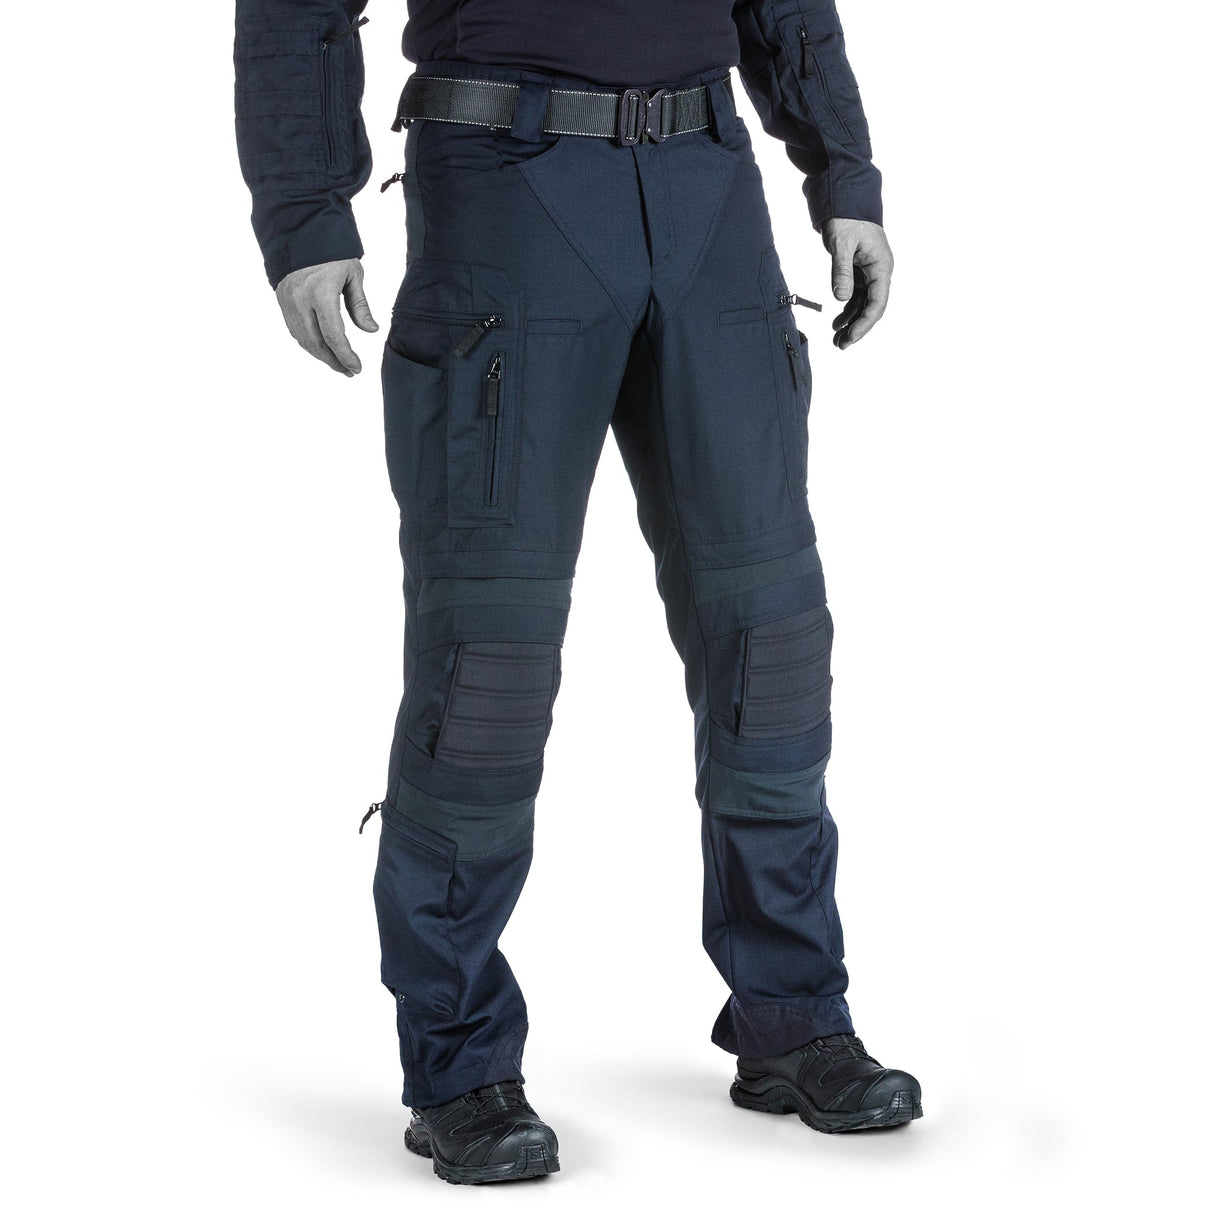 Striker X Gen.2 Combat Pants – Urban Tactical